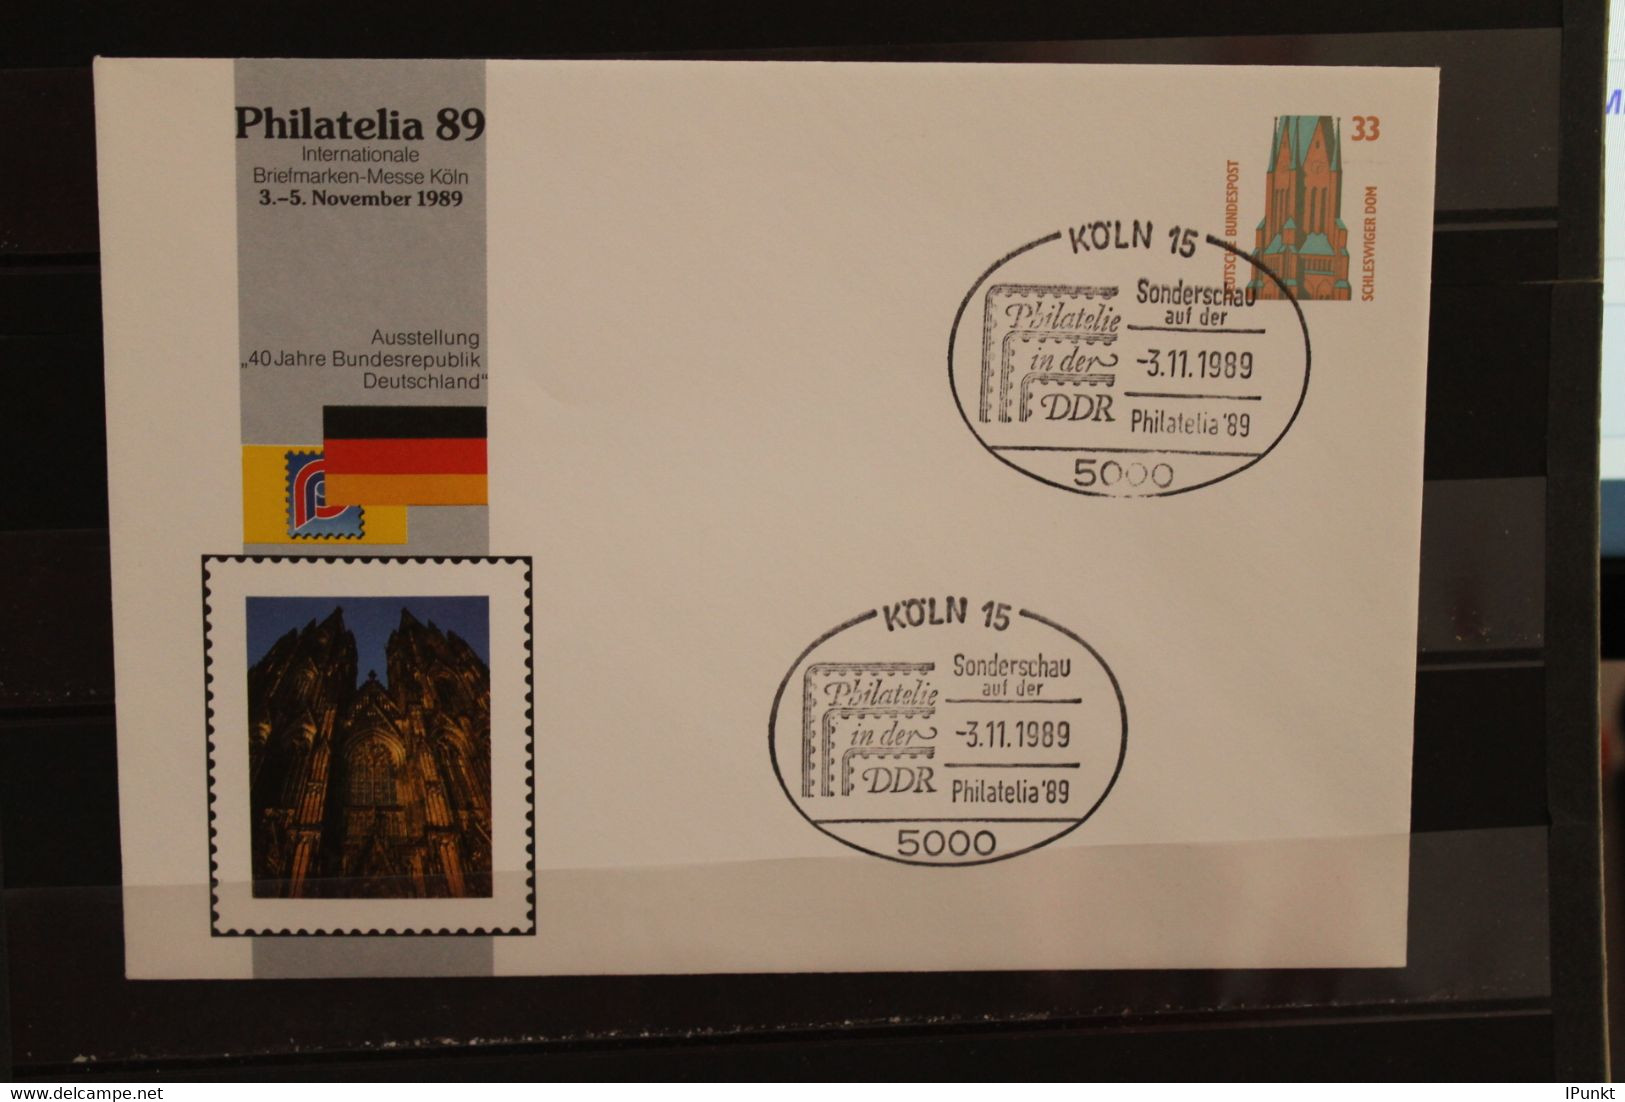 Deutschland 1989, Ganzsache: Philatelia 89 Köln - DDR Philatelie, Wertstempel 33 Pf., Sehenswürdigkeiten - Private Covers - Used